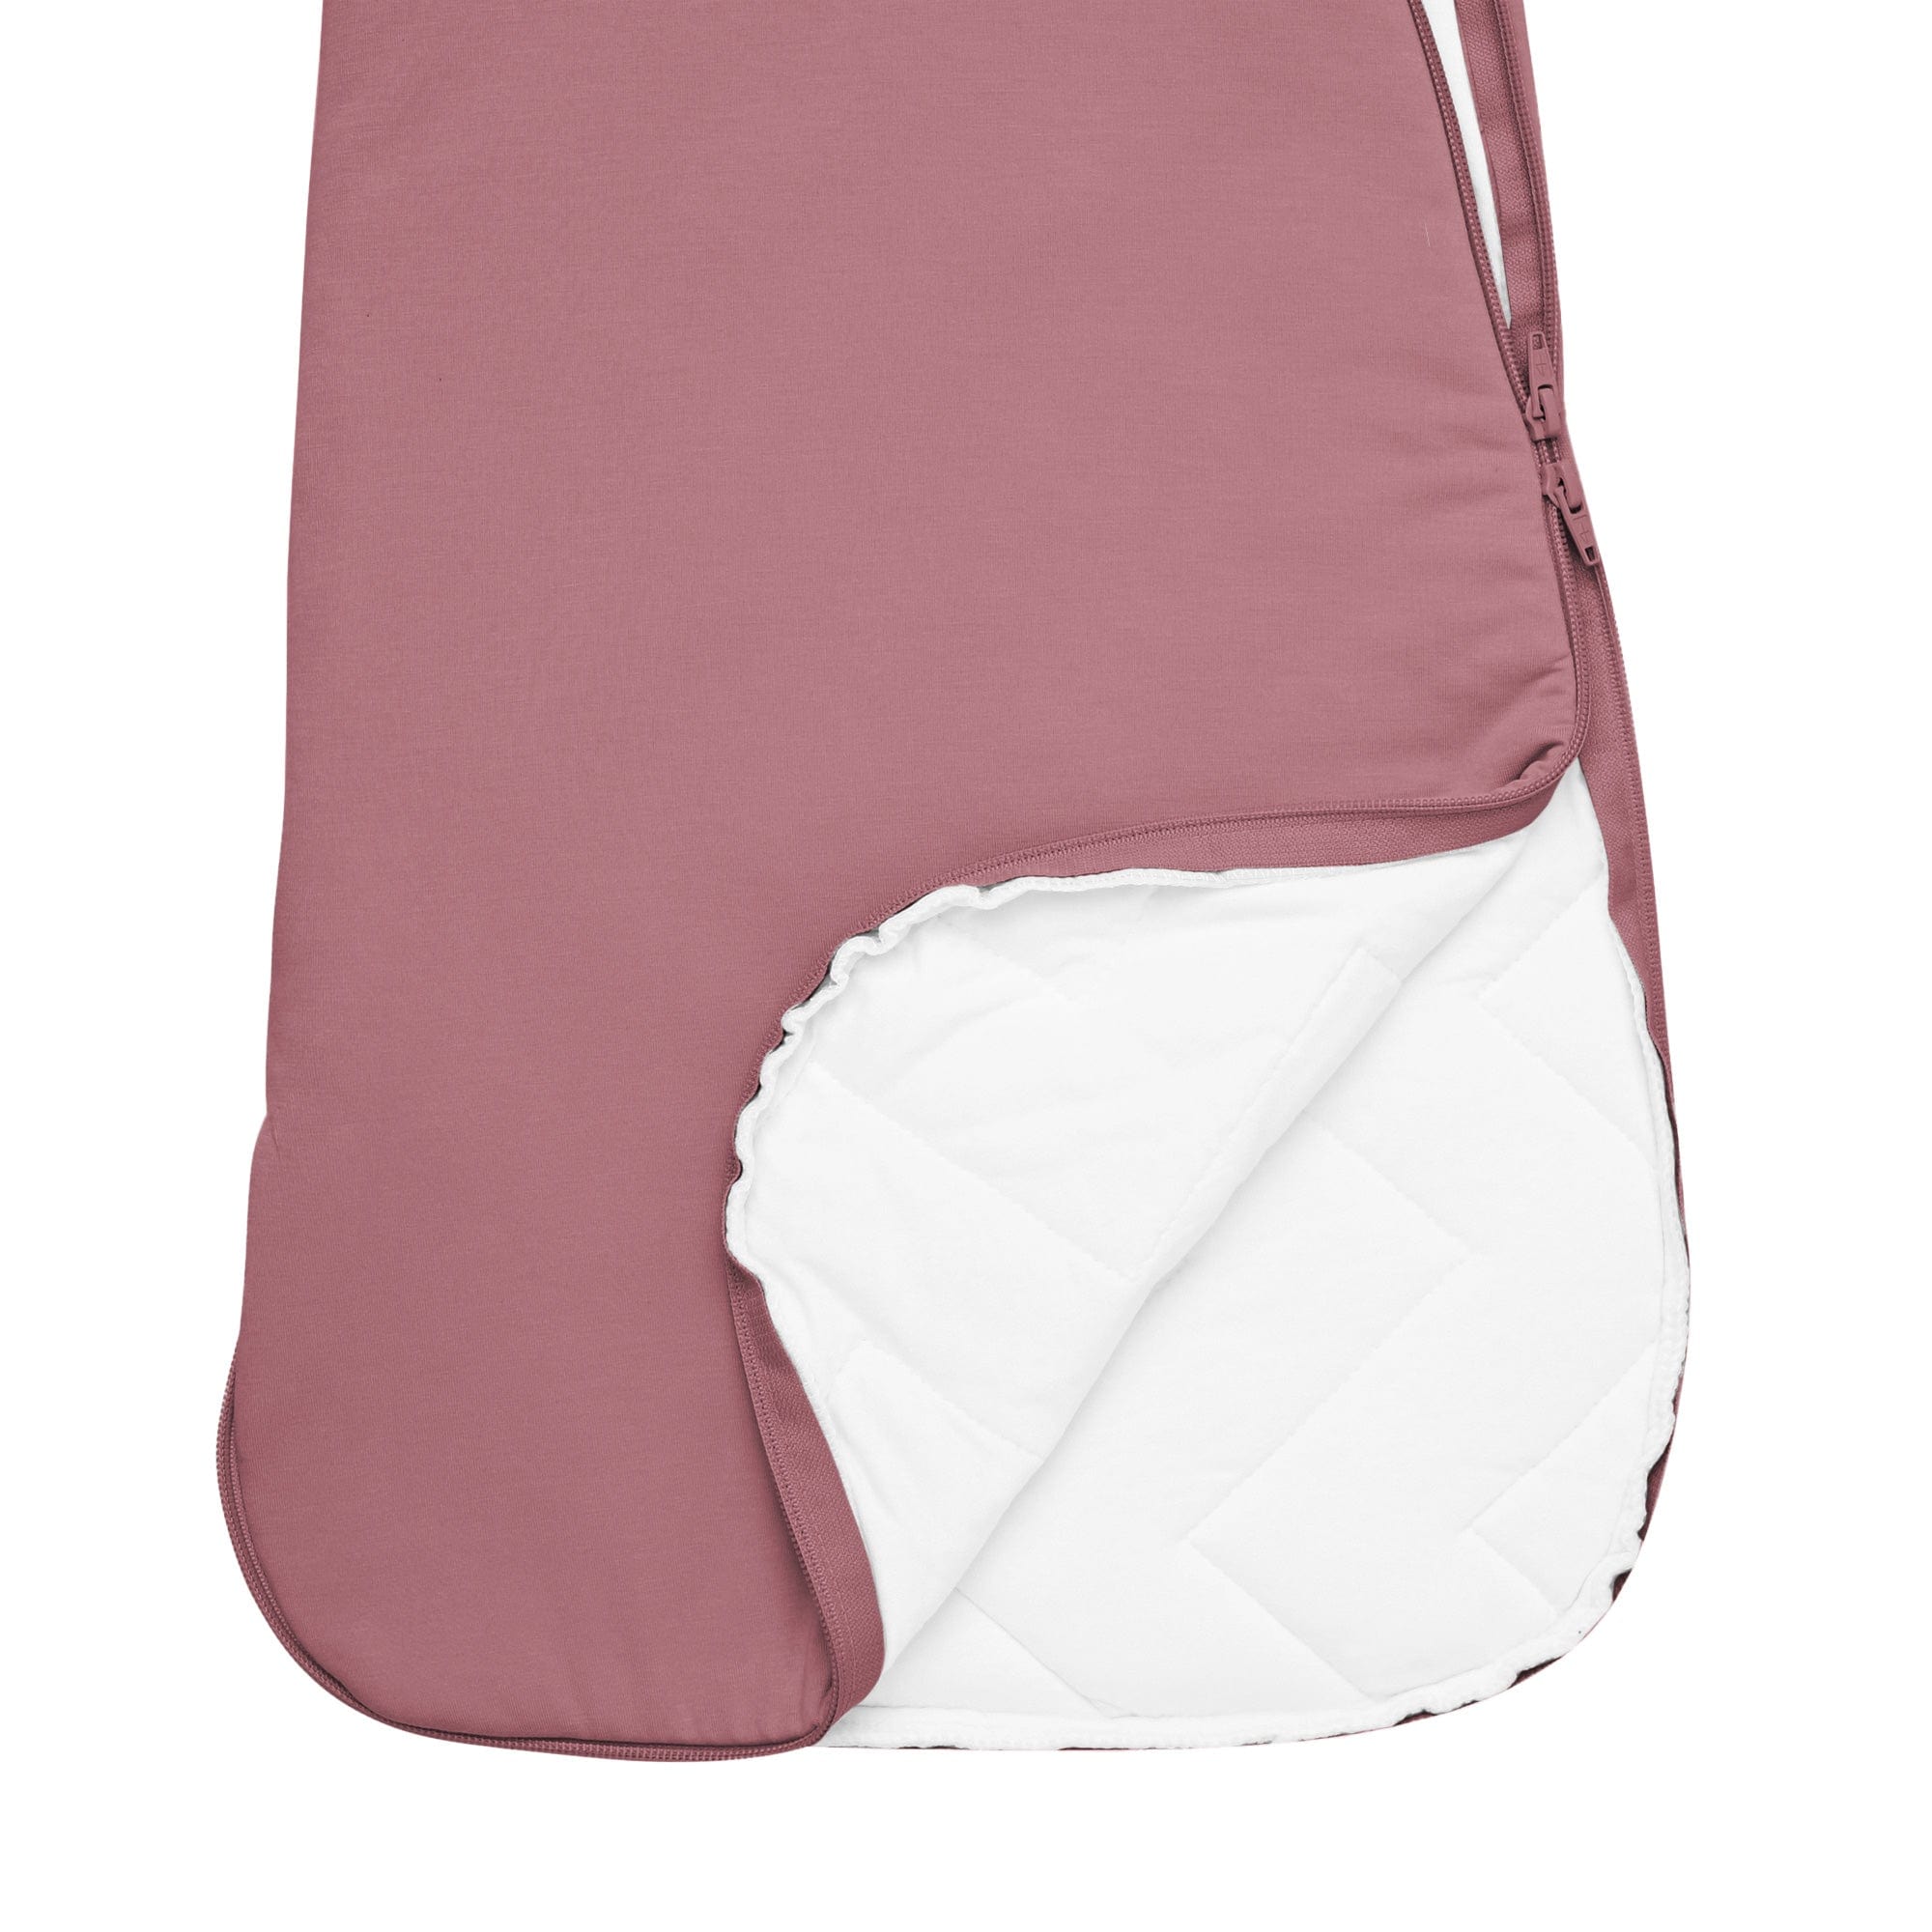 Kyte Baby Sleep Bag 2.5 Tog Sleep Bag in Dusty Rose 2.5